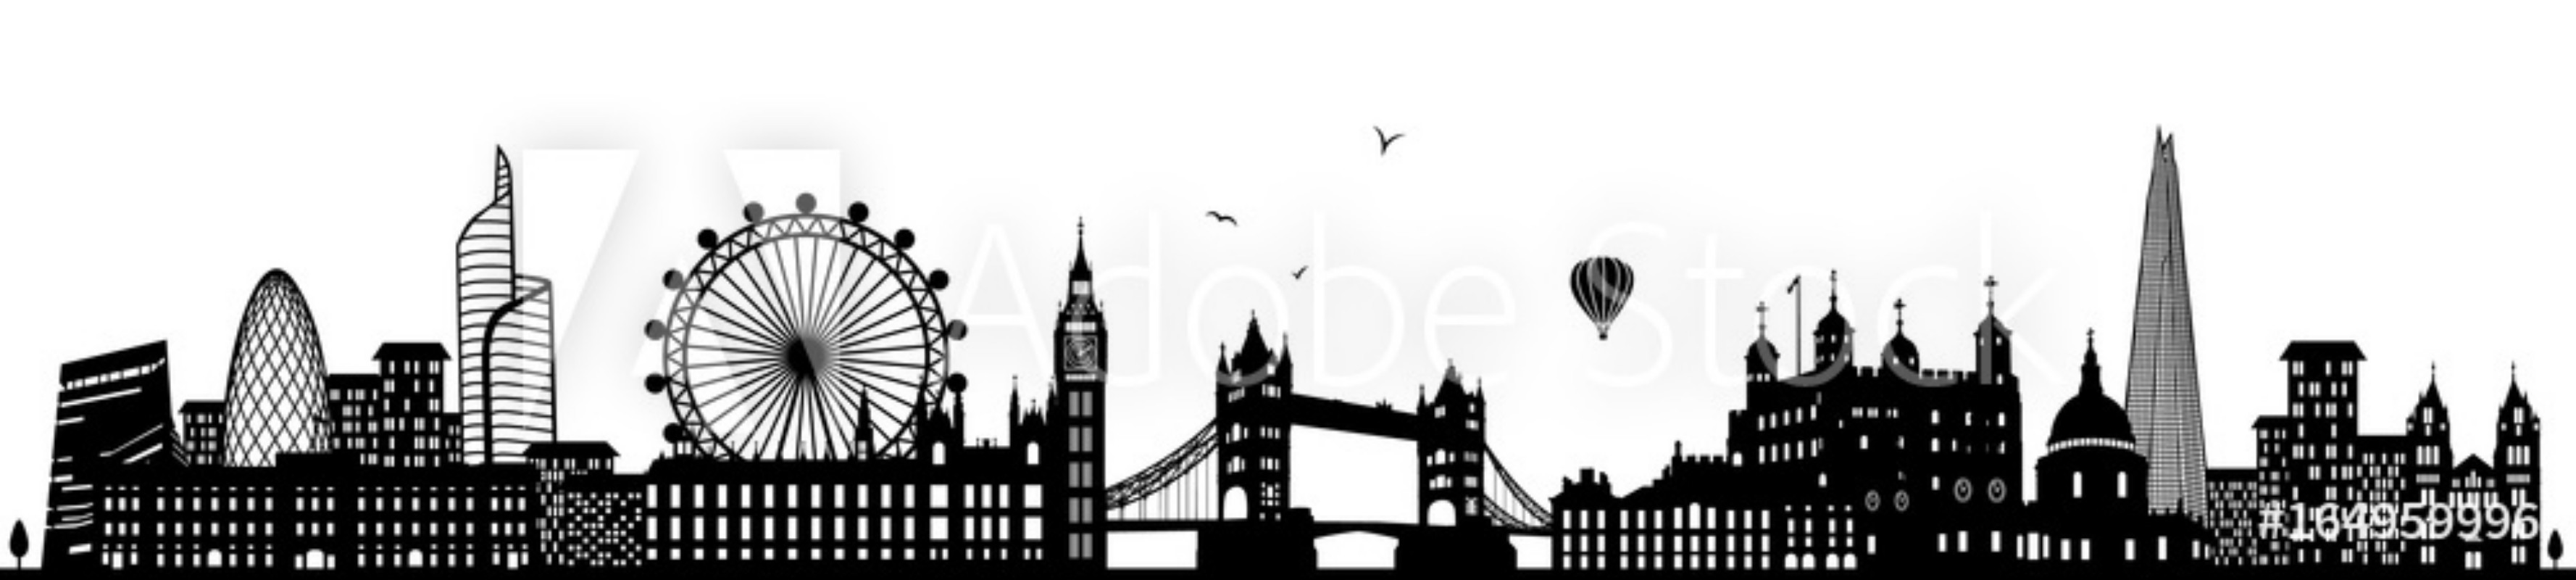 Image de London Skyline schwarz